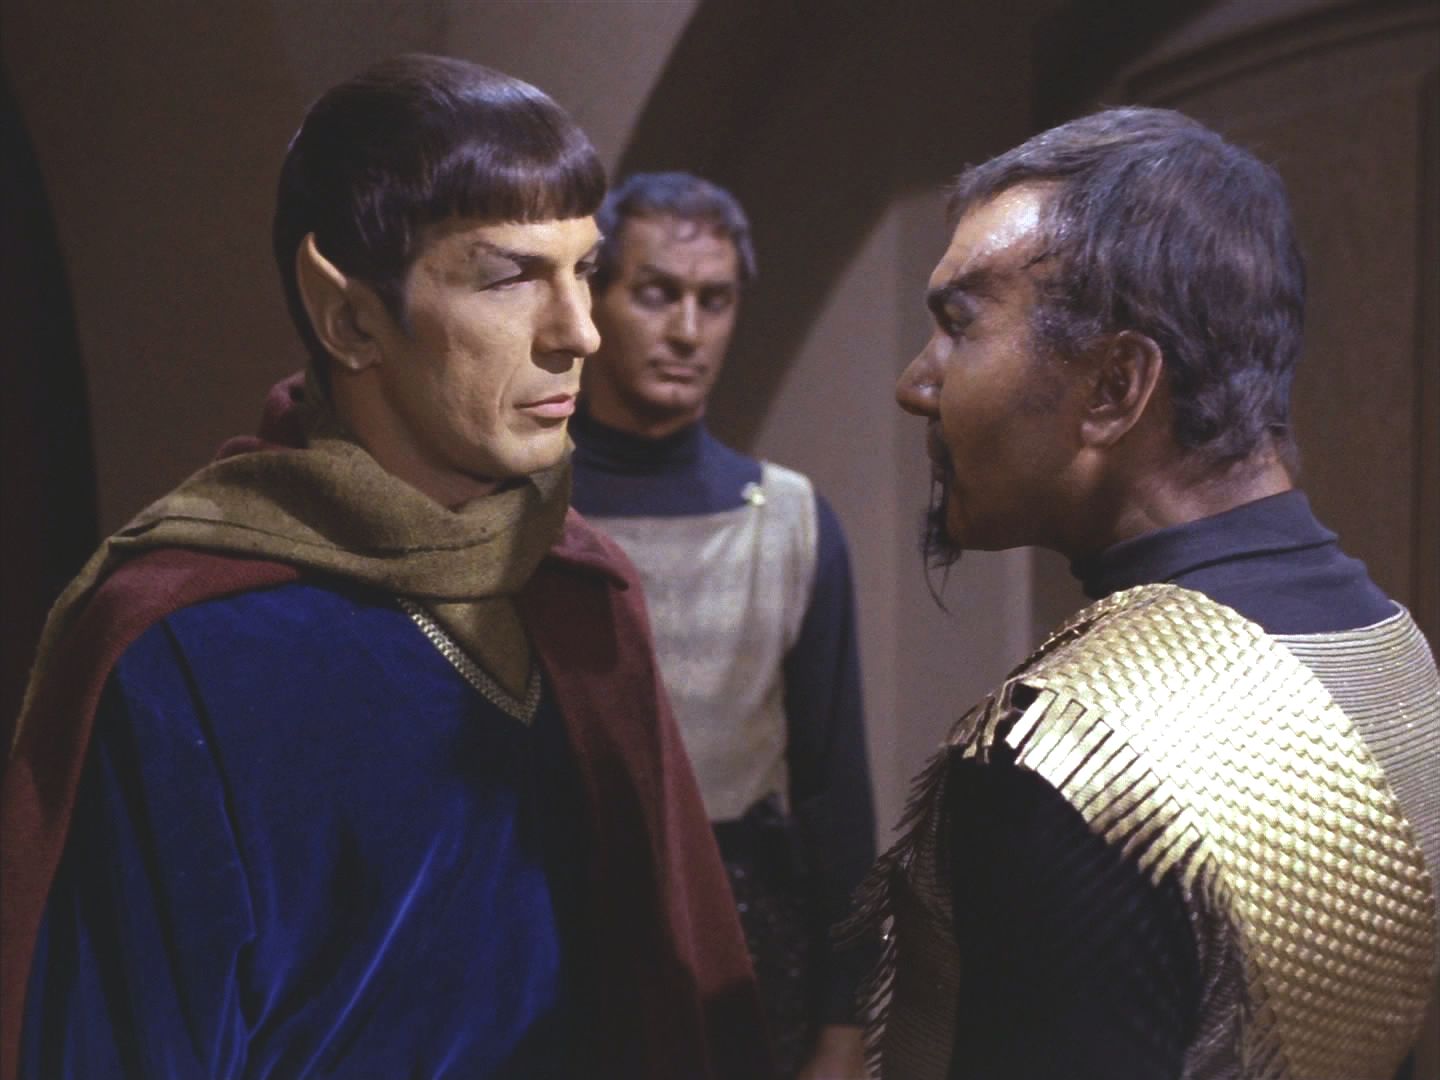 V tu chvíli se vylodily klingonské okupační síly. Do síně Rady vkročil komandér Kor. Kirk jako Organianec Baroner prošel, ovšem Spocka, údajně vulkanského obchodníka, odvedli.